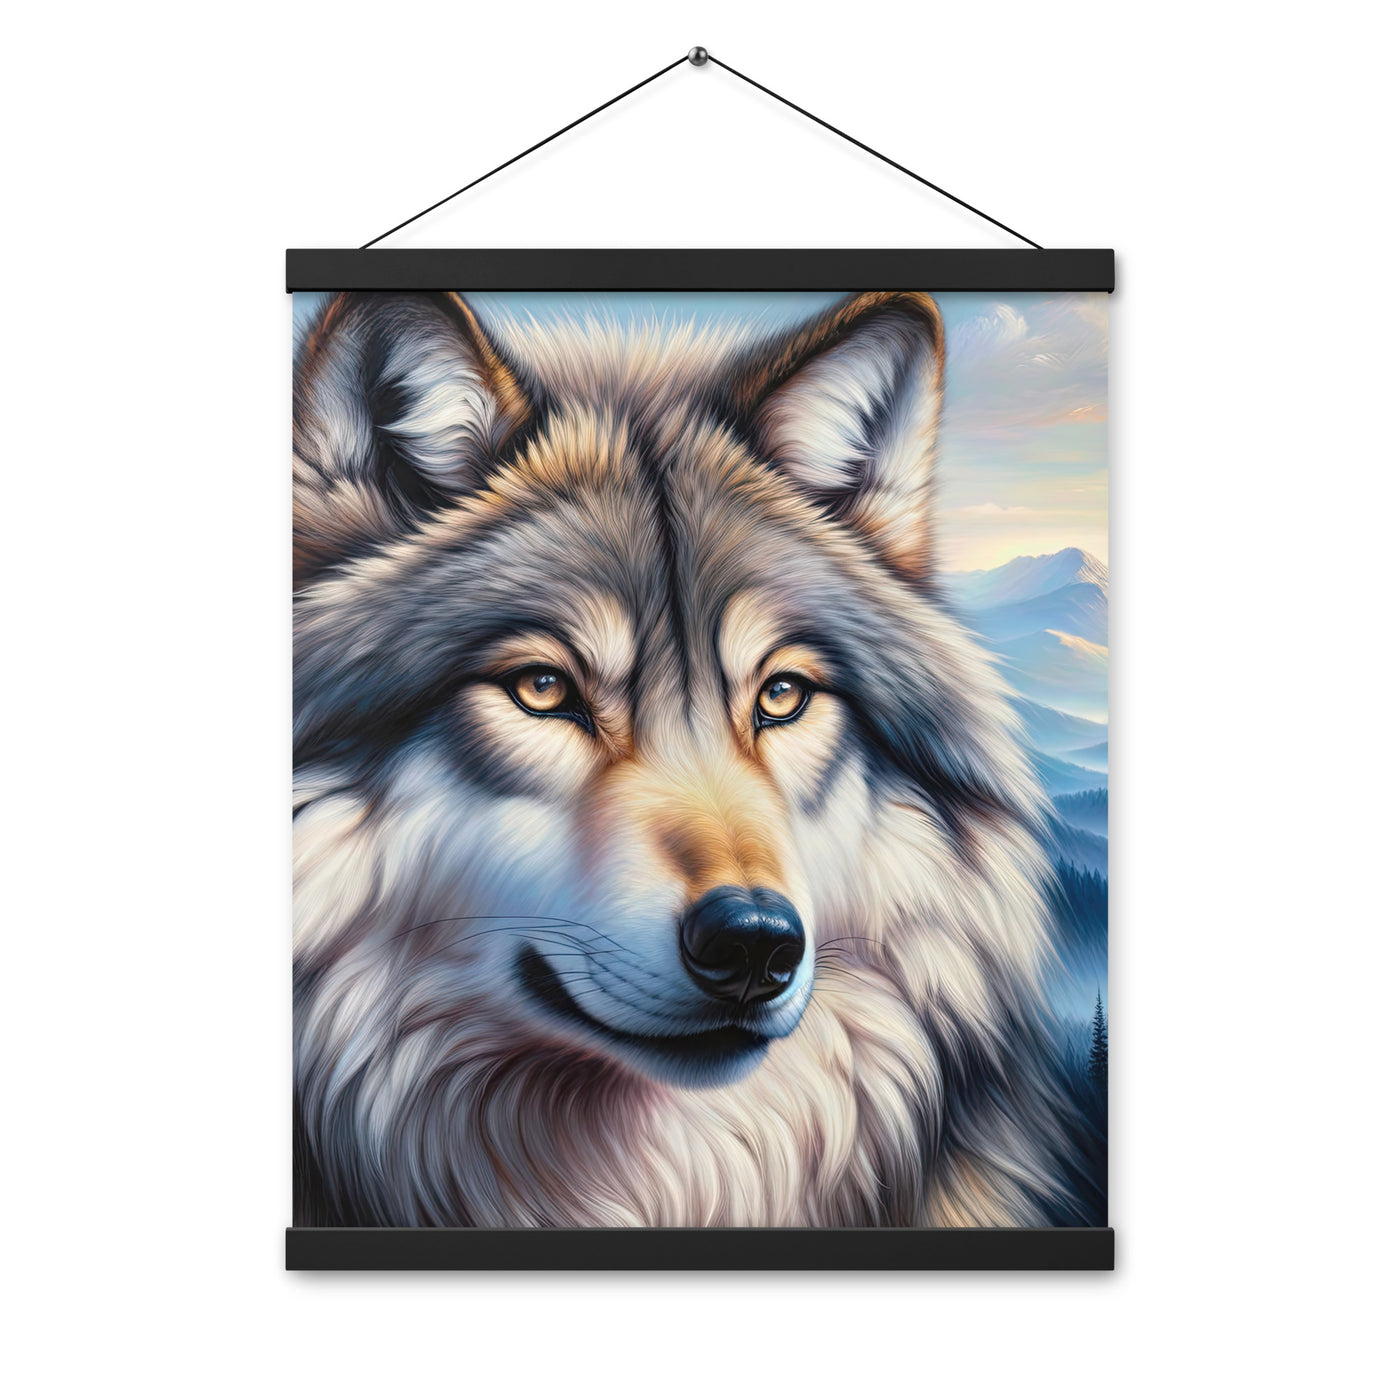 Ölgemäldeporträt eines majestätischen Wolfes mit intensiven Augen in der Berglandschaft (AN) - Premium Poster mit Aufhängung xxx yyy zzz 40.6 x 50.8 cm